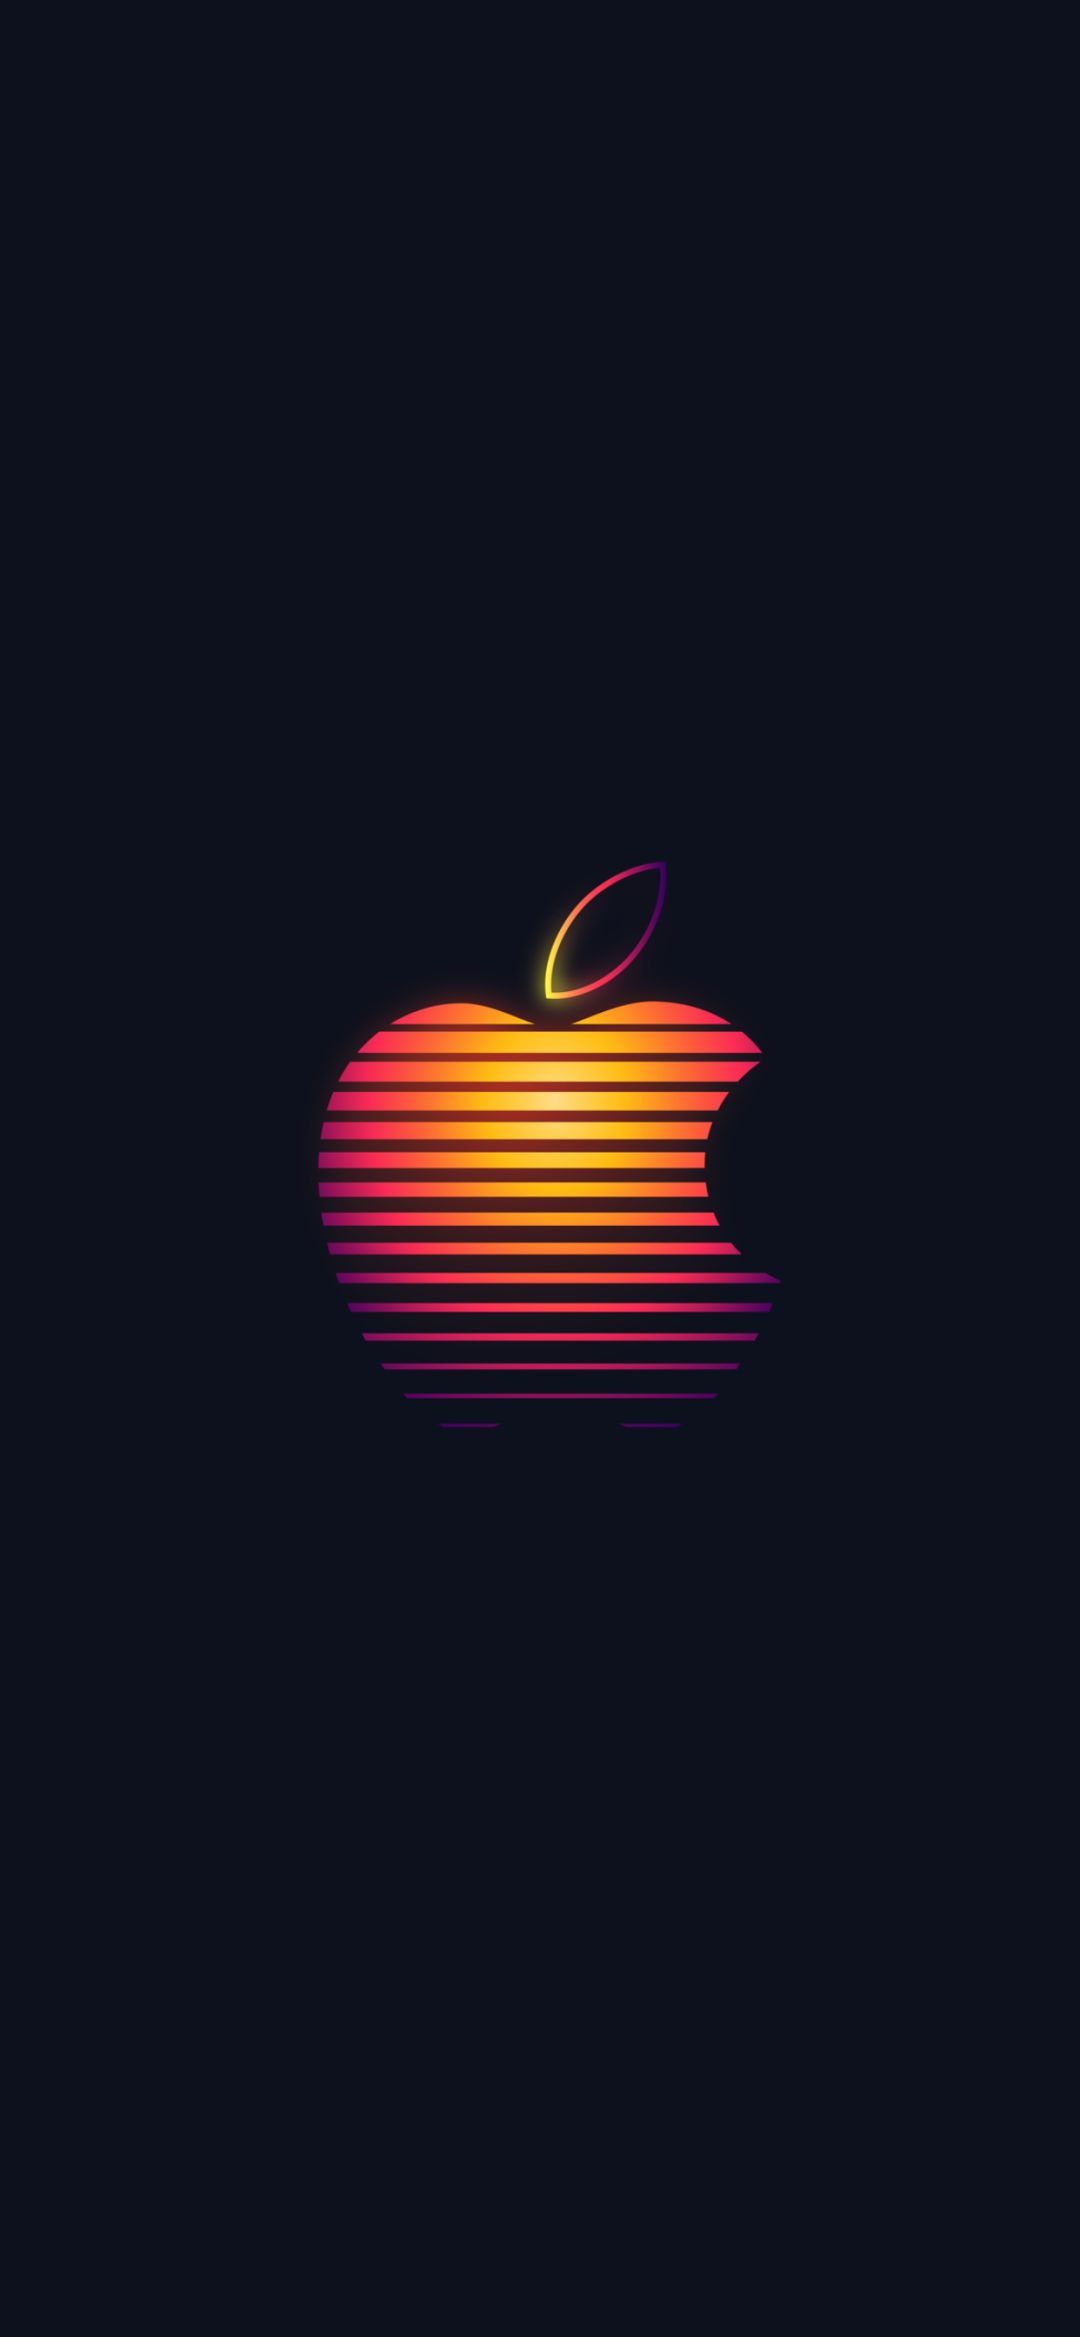 苹果logo原图_壁纸 | 新苹果 LOGO 壁纸 (https://mushiming.com/)  第2张